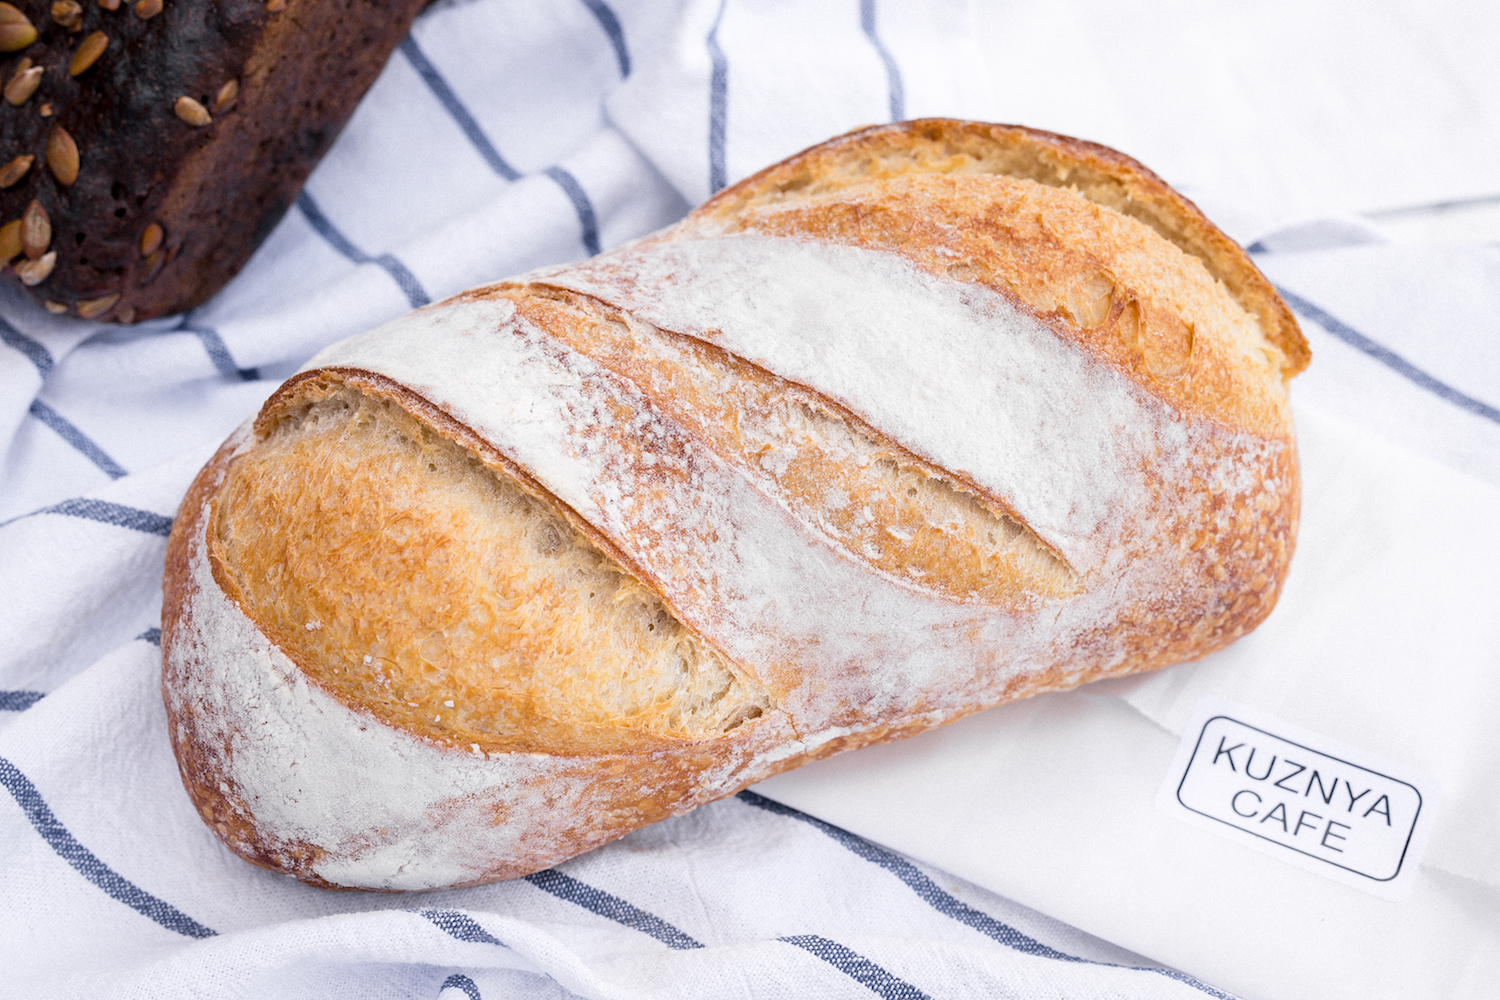 Salt: главное здесь, остальное по вкусу - Пшеничный хлеб Kuznya Cafe